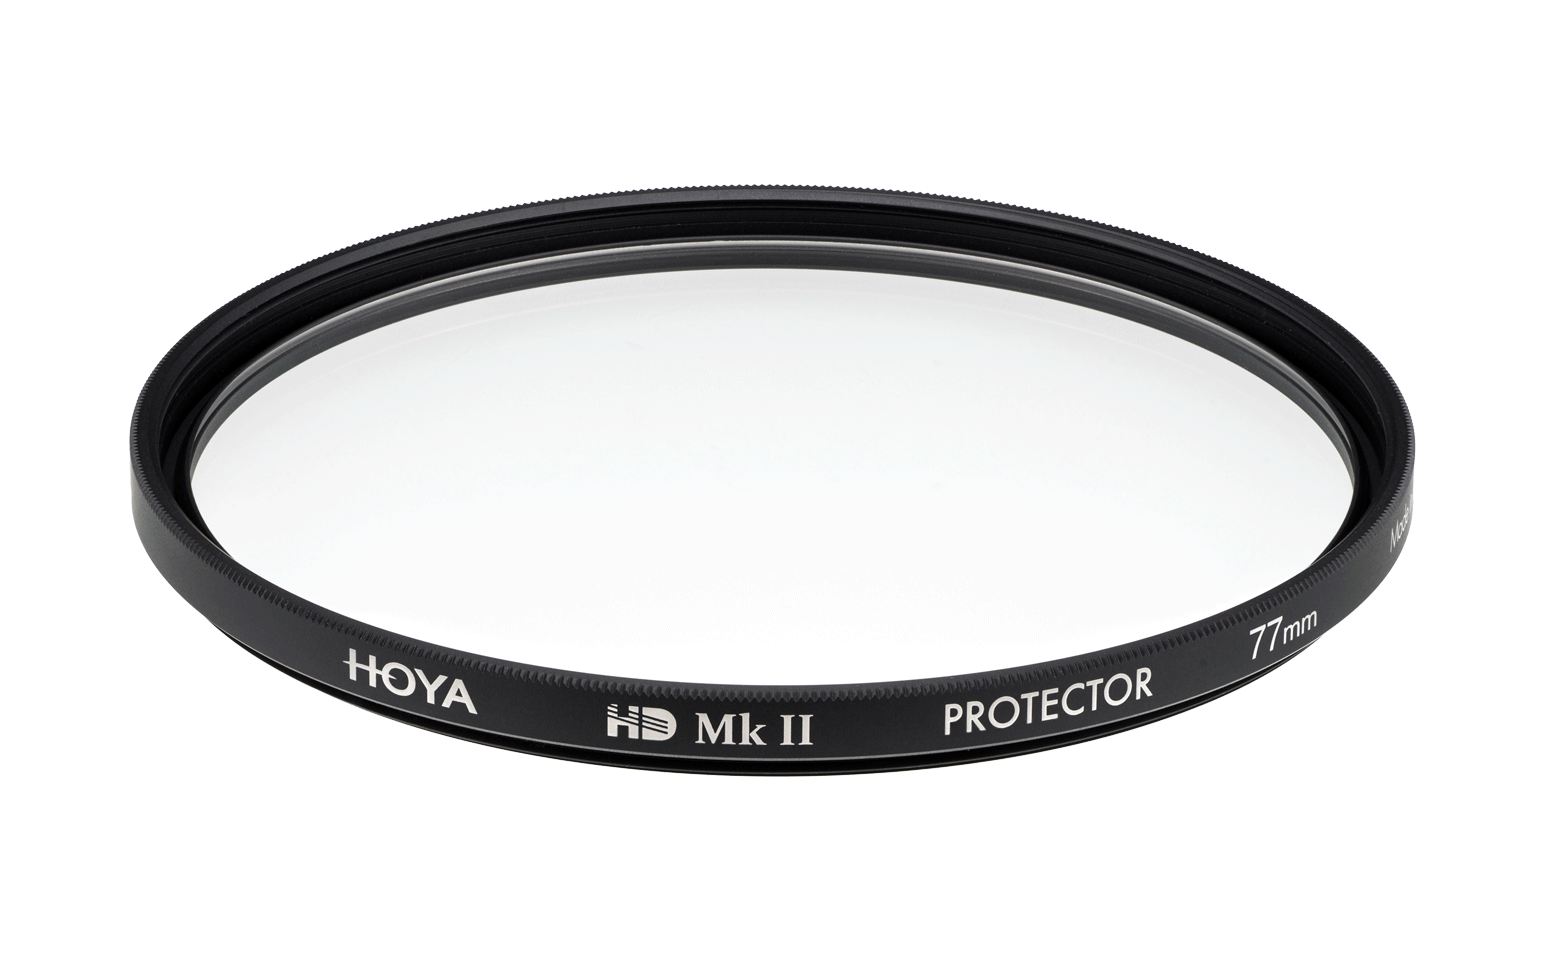 HOYA HD Mk II Protector